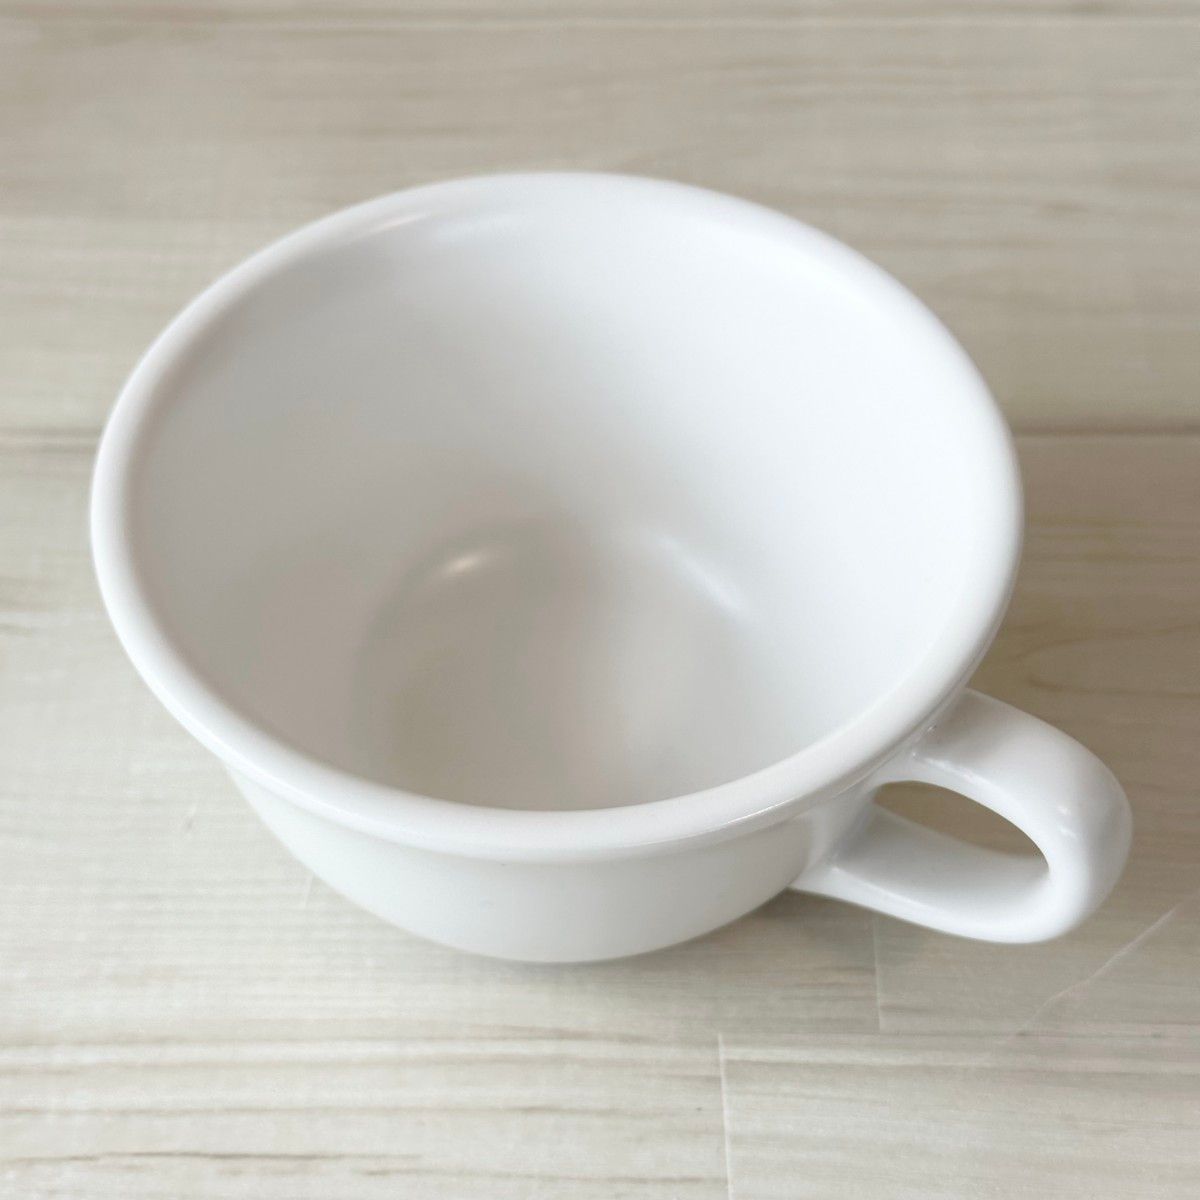 新品 日本製 美濃焼 光洋陶器 スープカップ マグカップ ホワイト ブラック モノトーン シンプル お洒落